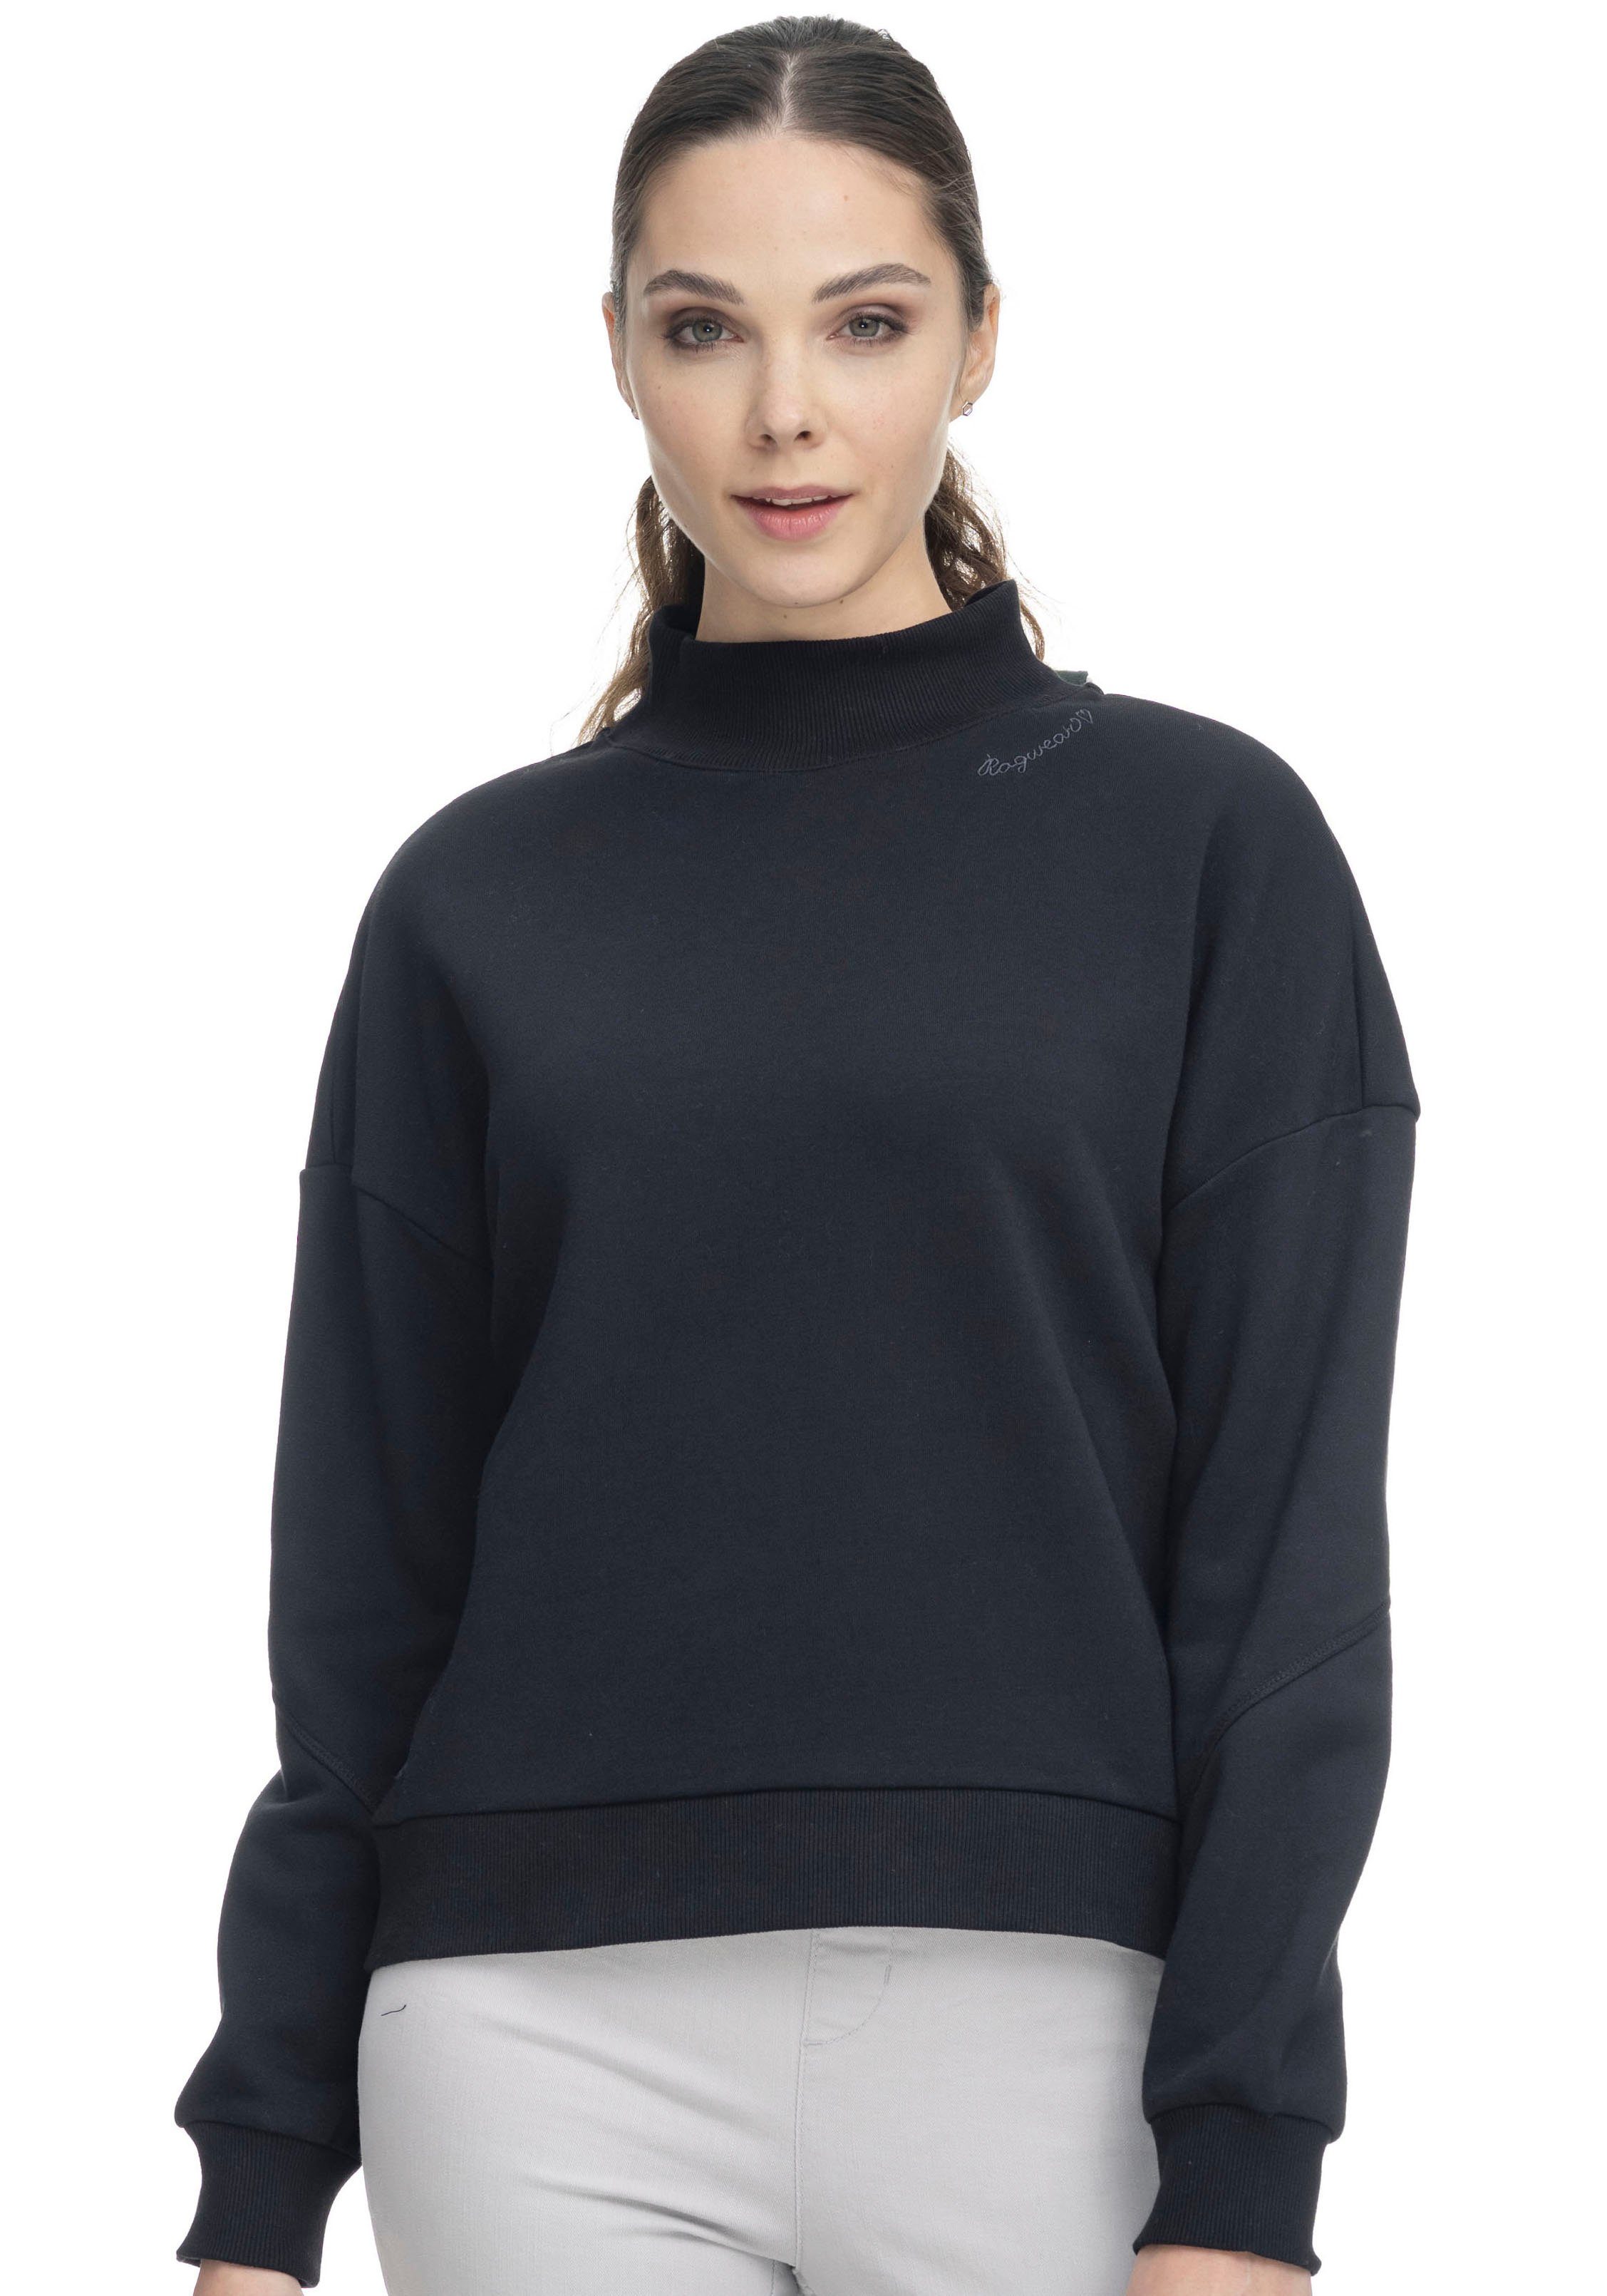 SWEAT KAILA black Ragwear 1010 Sweater